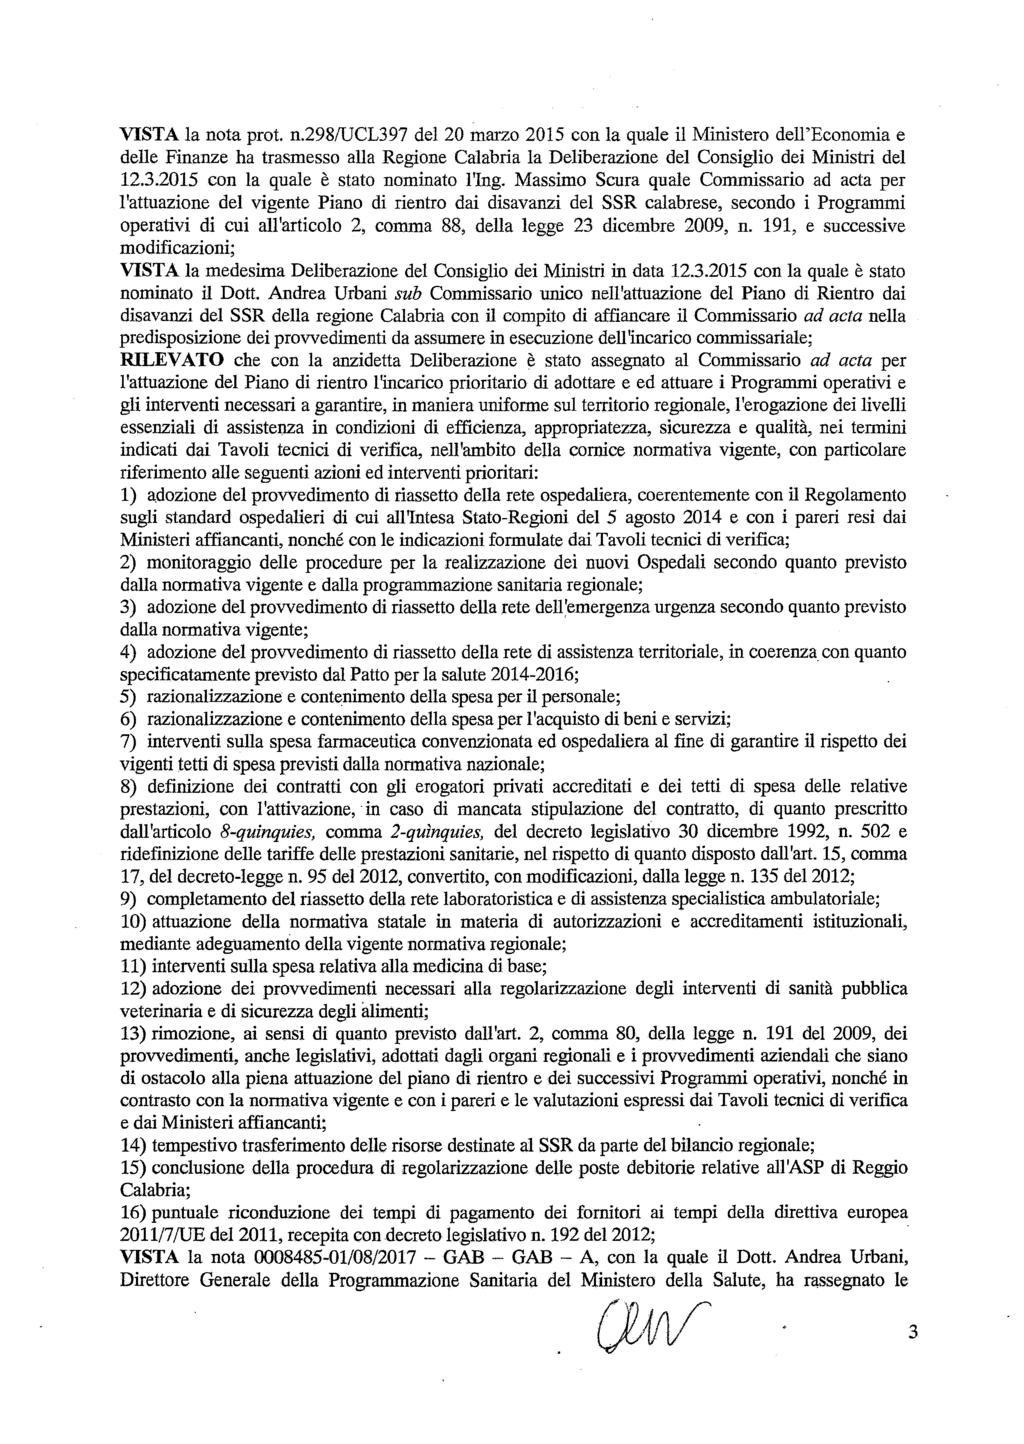 VISTA la nota prot. n.298/ucl397 del 20 marzo 2015 con la quale il Ministero dell'economia e delle Finanze ha trasmesso alla Regione Calabria la Deliberazione del Consiglio dei Ministri del 12.3.2015 con la quale è stato nominato l'ing.